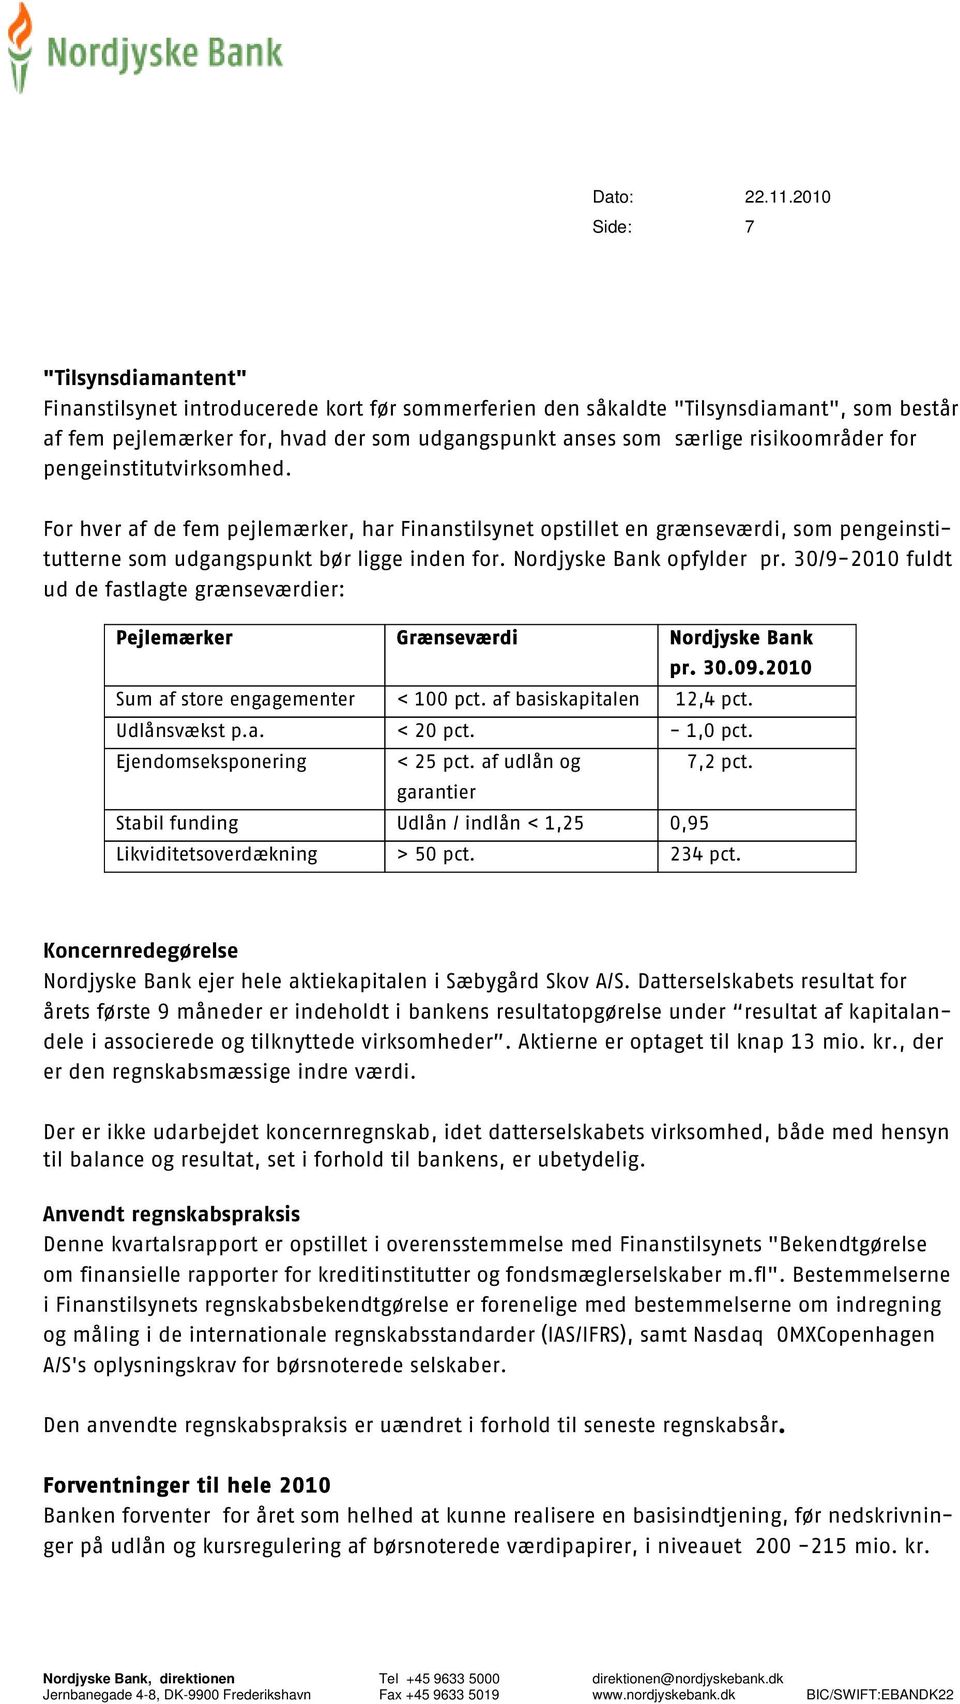 Nordjyske Bank opfylder pr. 30/9-2010 fuldt ud de fastlagte grænseværdier: Pejlemærker Sum af store engagementer Udlånsvækst p.a. Ejendomseksponering Stabil funding Likviditetsoverdækning Grænseværdi < 100 pct.